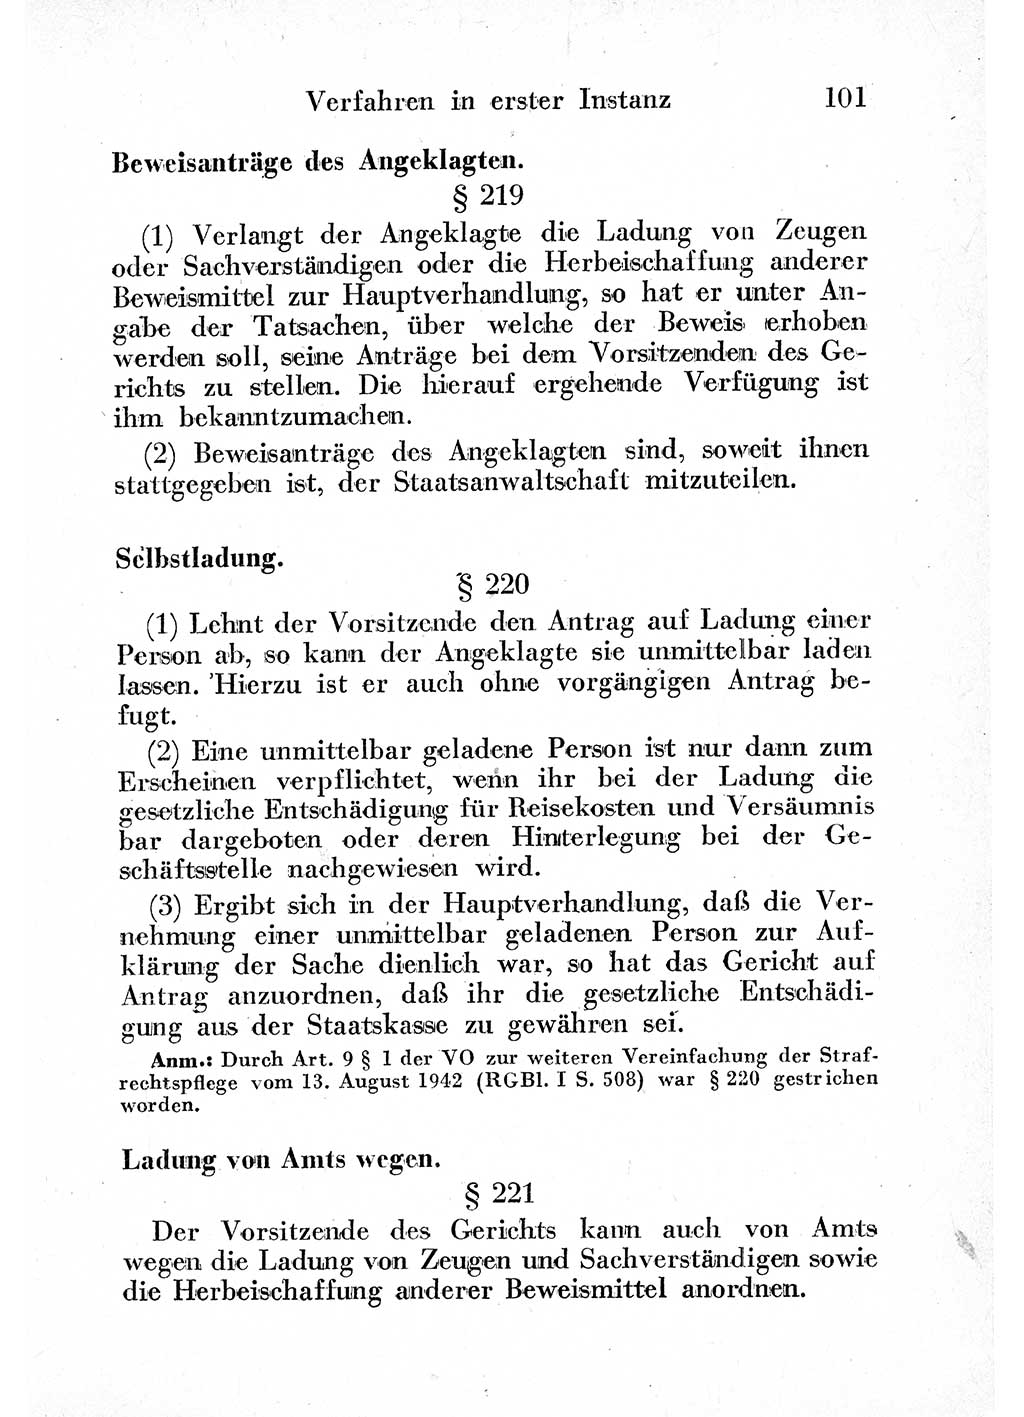 Strafprozeßordnung (StPO), Gerichtsverfassungsgesetz (GVG) und zahlreiche Nebengesetze der sowjetischen Besatzungszone (SBZ) in Deutschland 1949, Seite 101 (StPO GVG Ges. SBZ Dtl. 1949, S. 101)